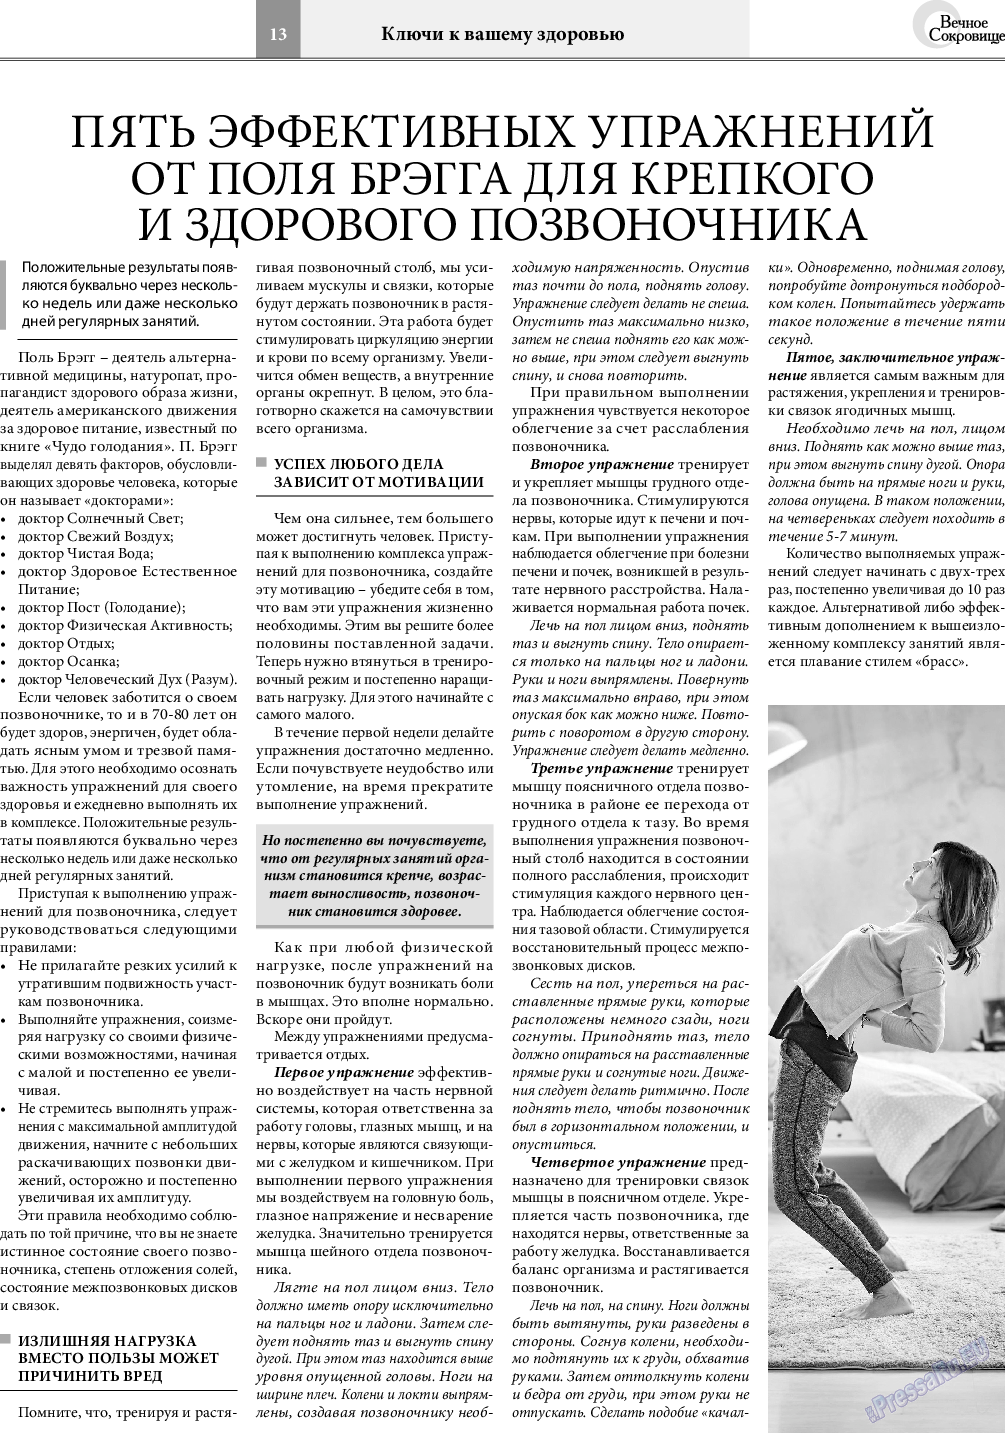 Вечное сокровище, газета. 2020 №6 стр.13